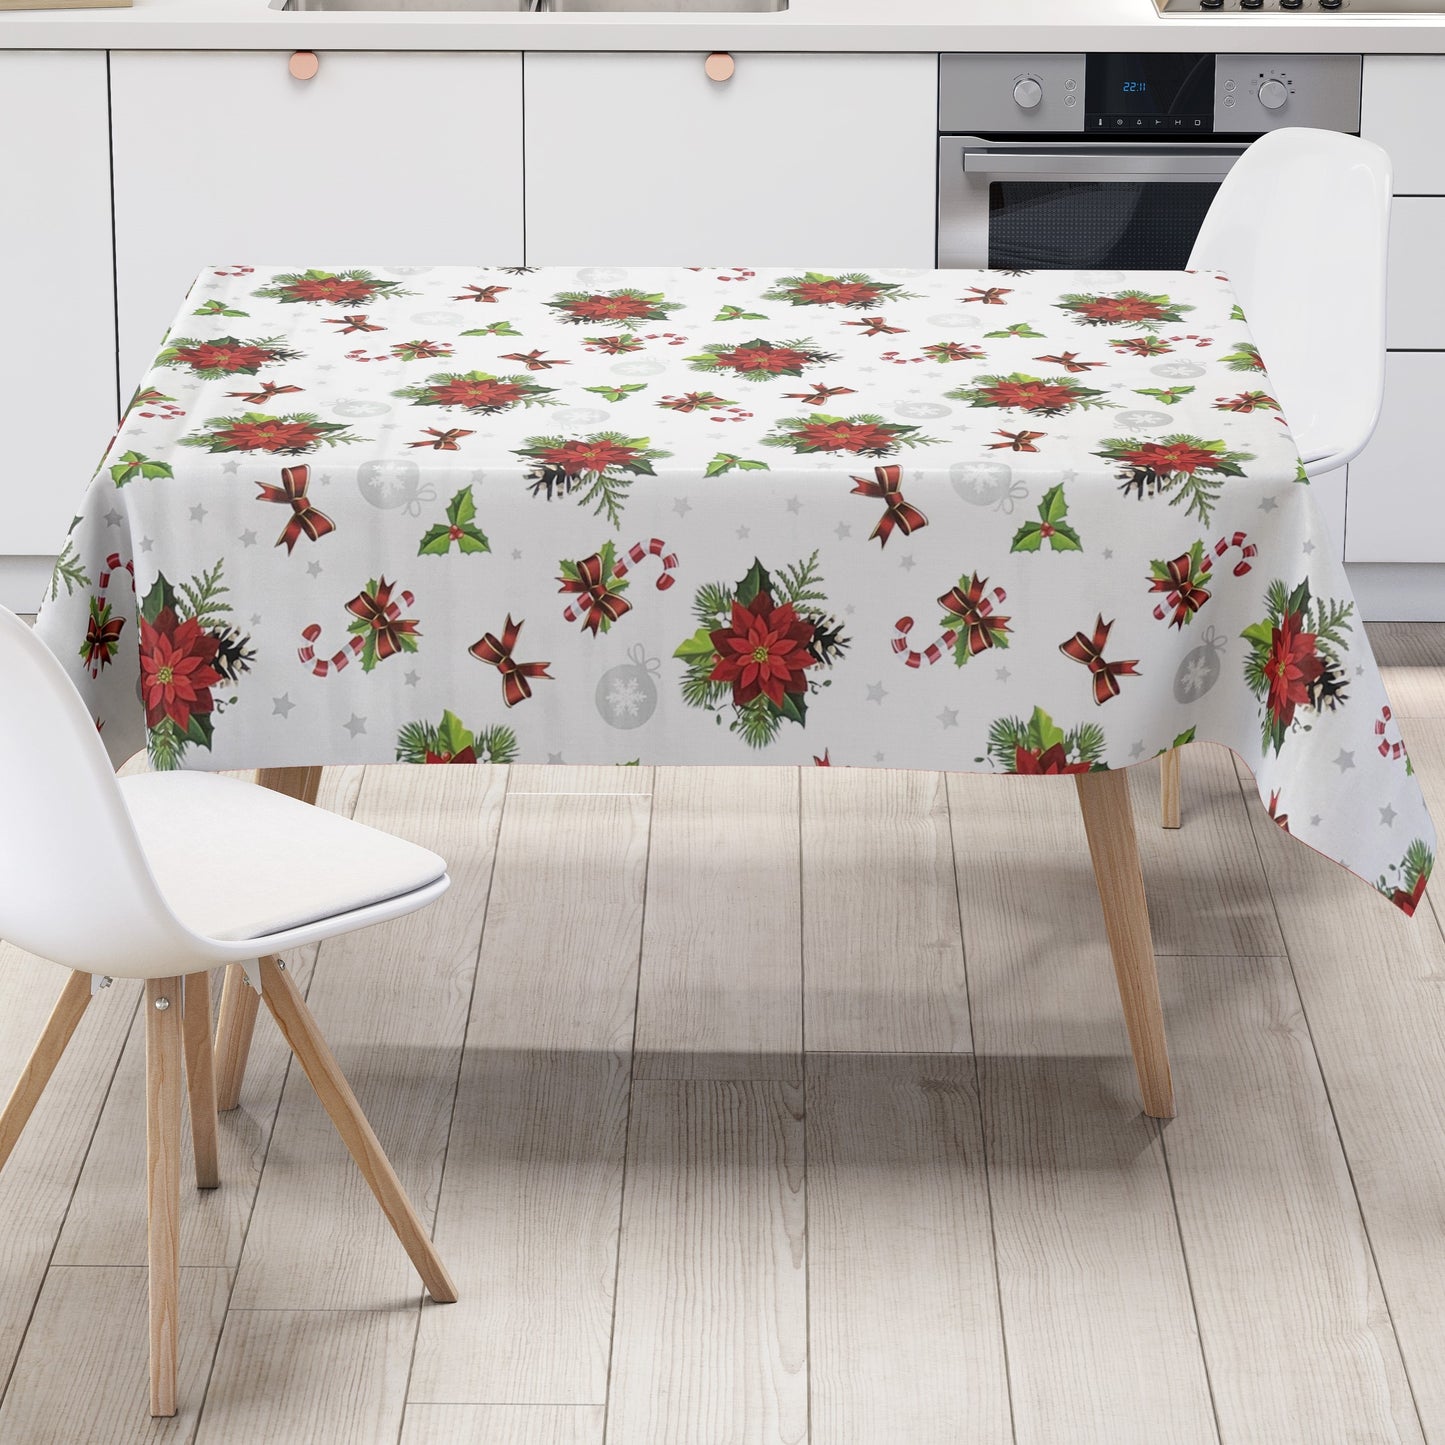 KEVKUS Wachstuch Tischdecke B6023-01 weiß Weihnachten Weihnachtsstern wählbar in eckig, rund und oval -